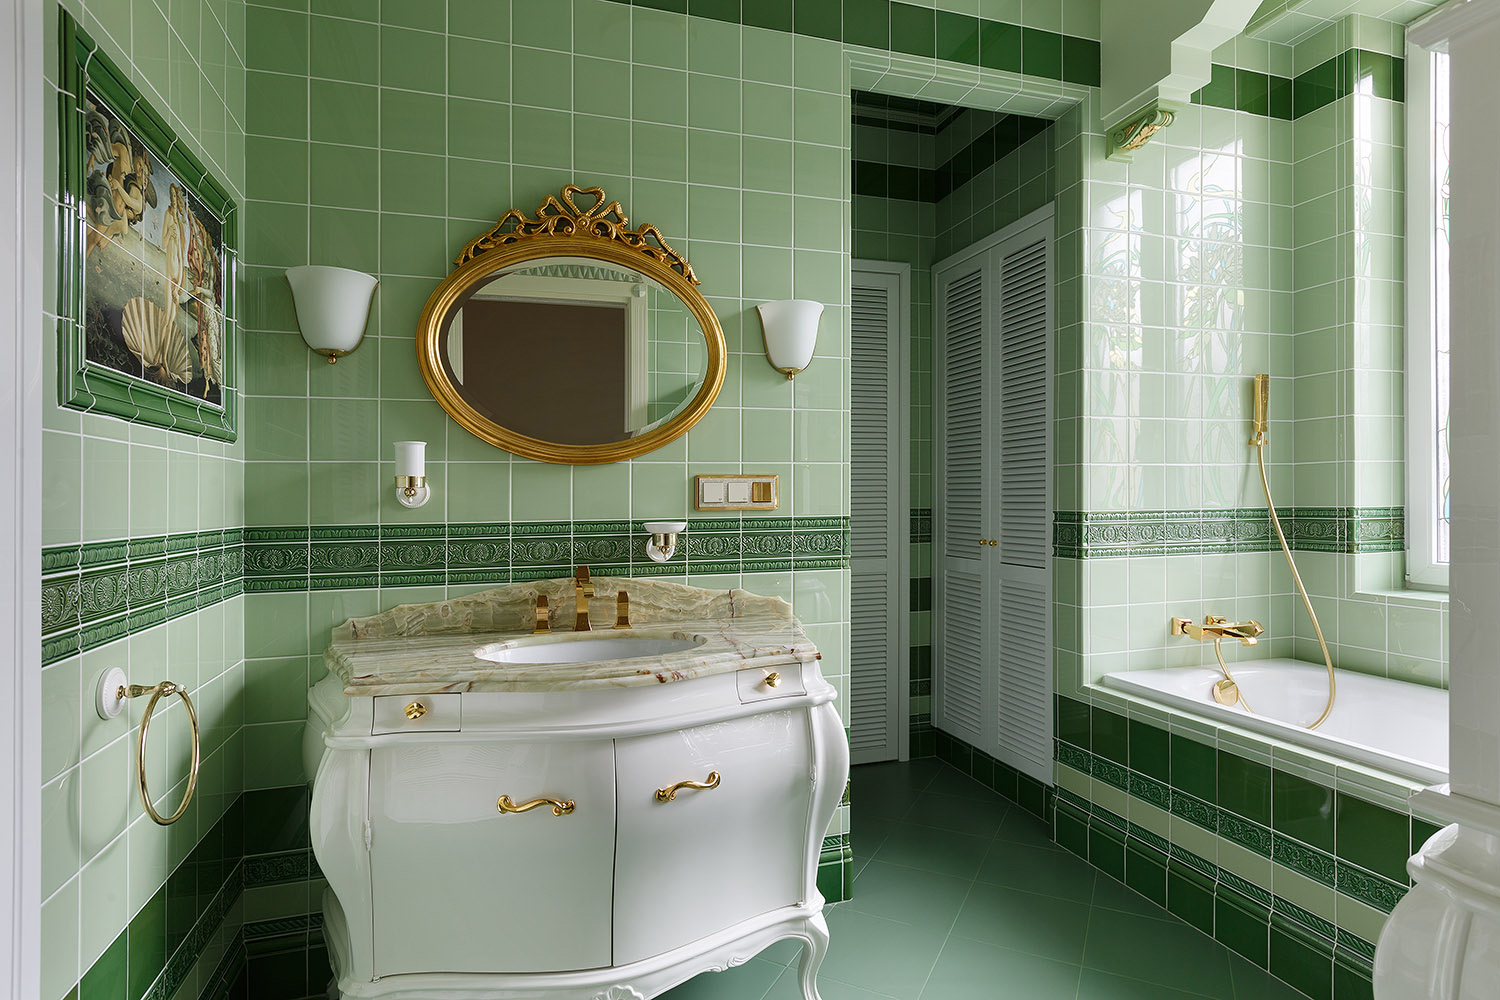 «Унисекс в ванной»: оформление ванной комнаты, подходящее для обоих